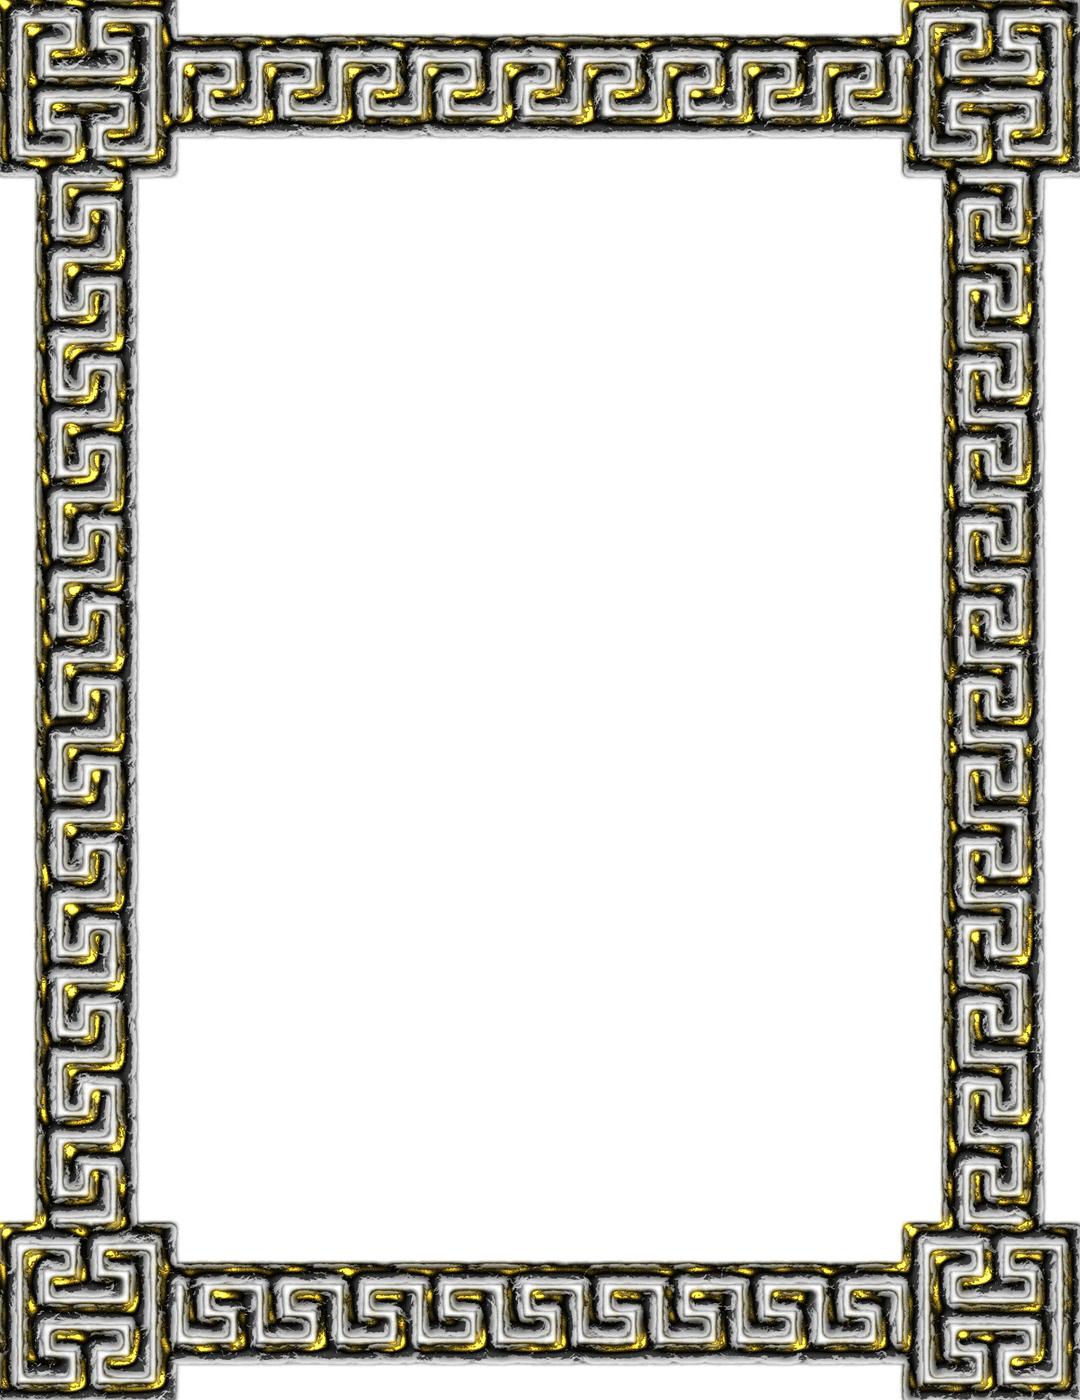 Greek key frame 7 png transparent